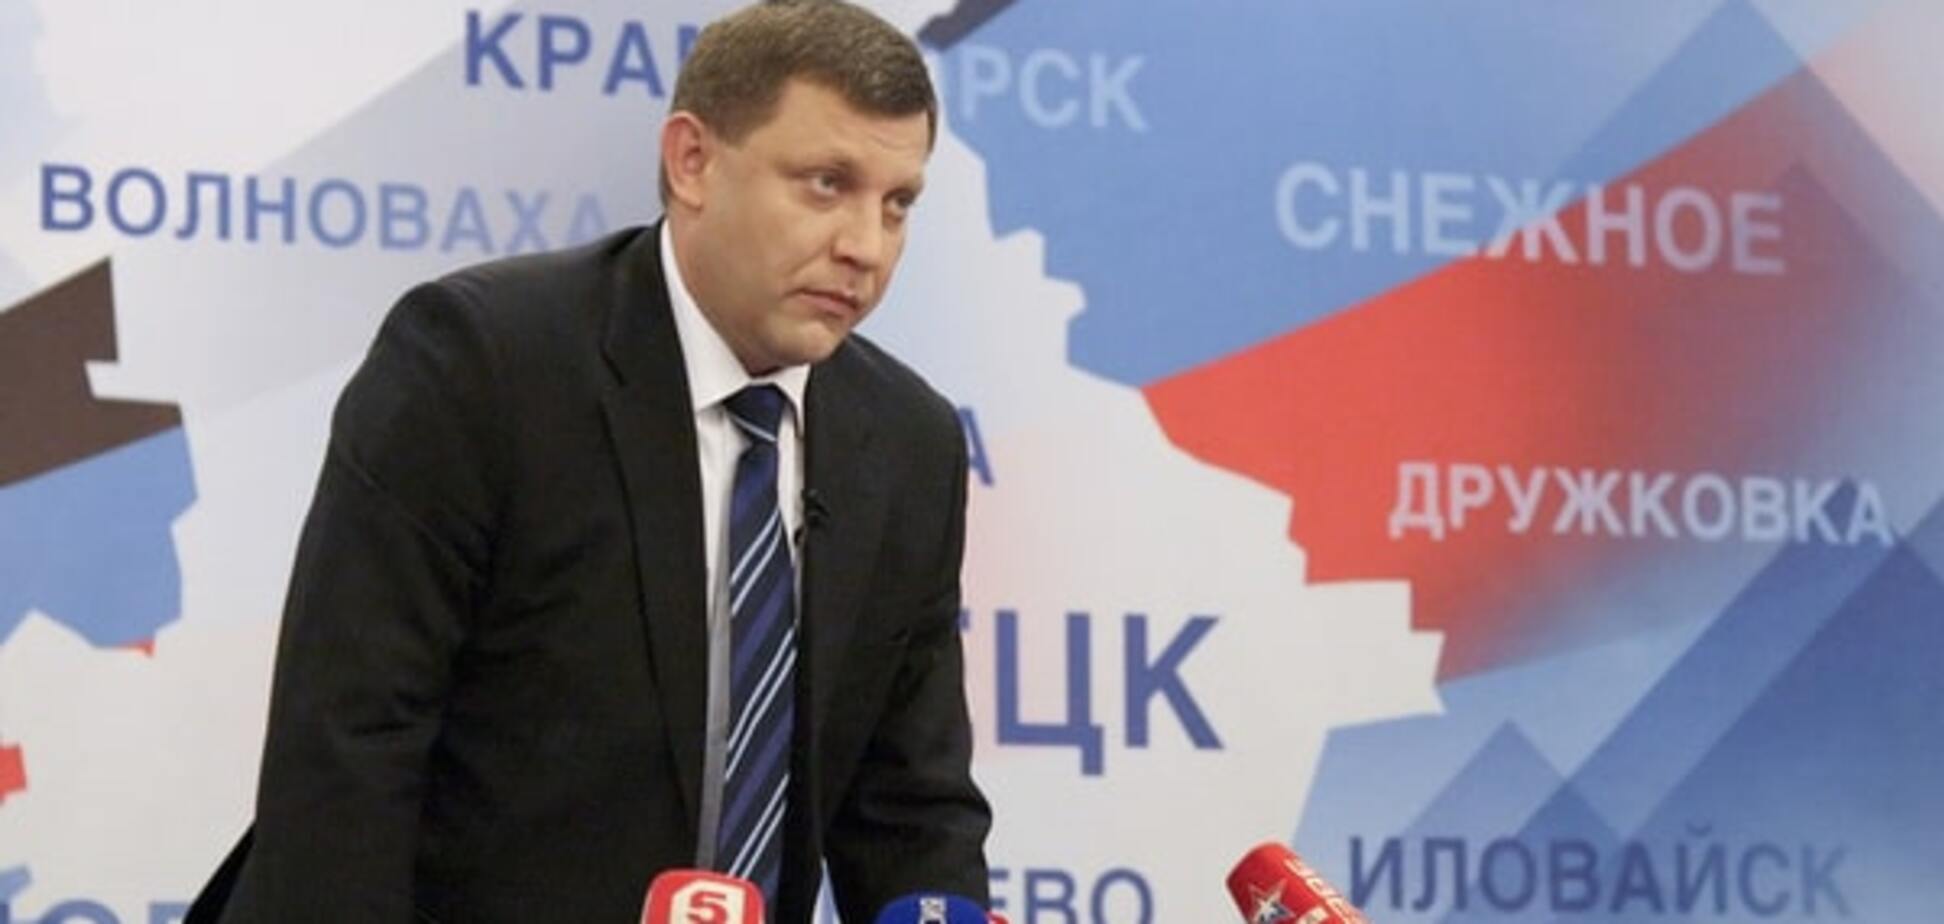 Марионетки Кремля в Донецке решились на 'местные выборы'